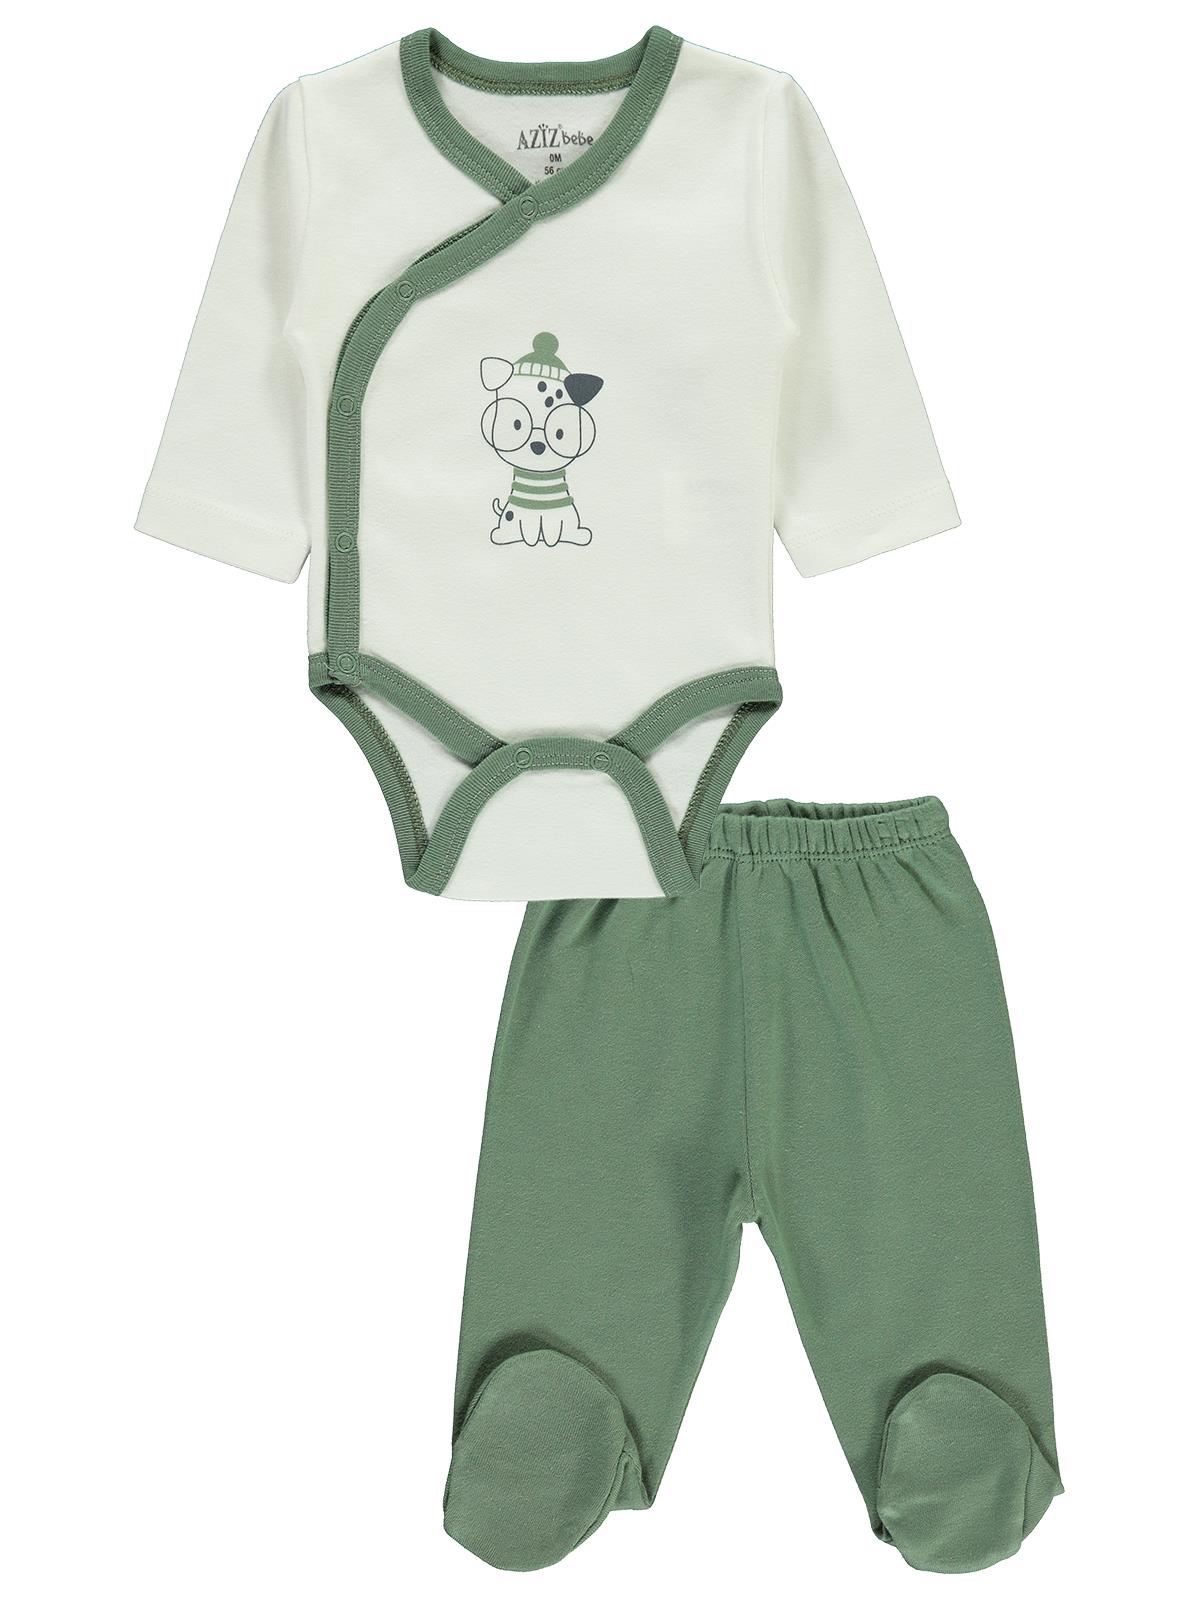 Aziz Bebe Erkek Bebek Takım 0-3 Ay Yeşil